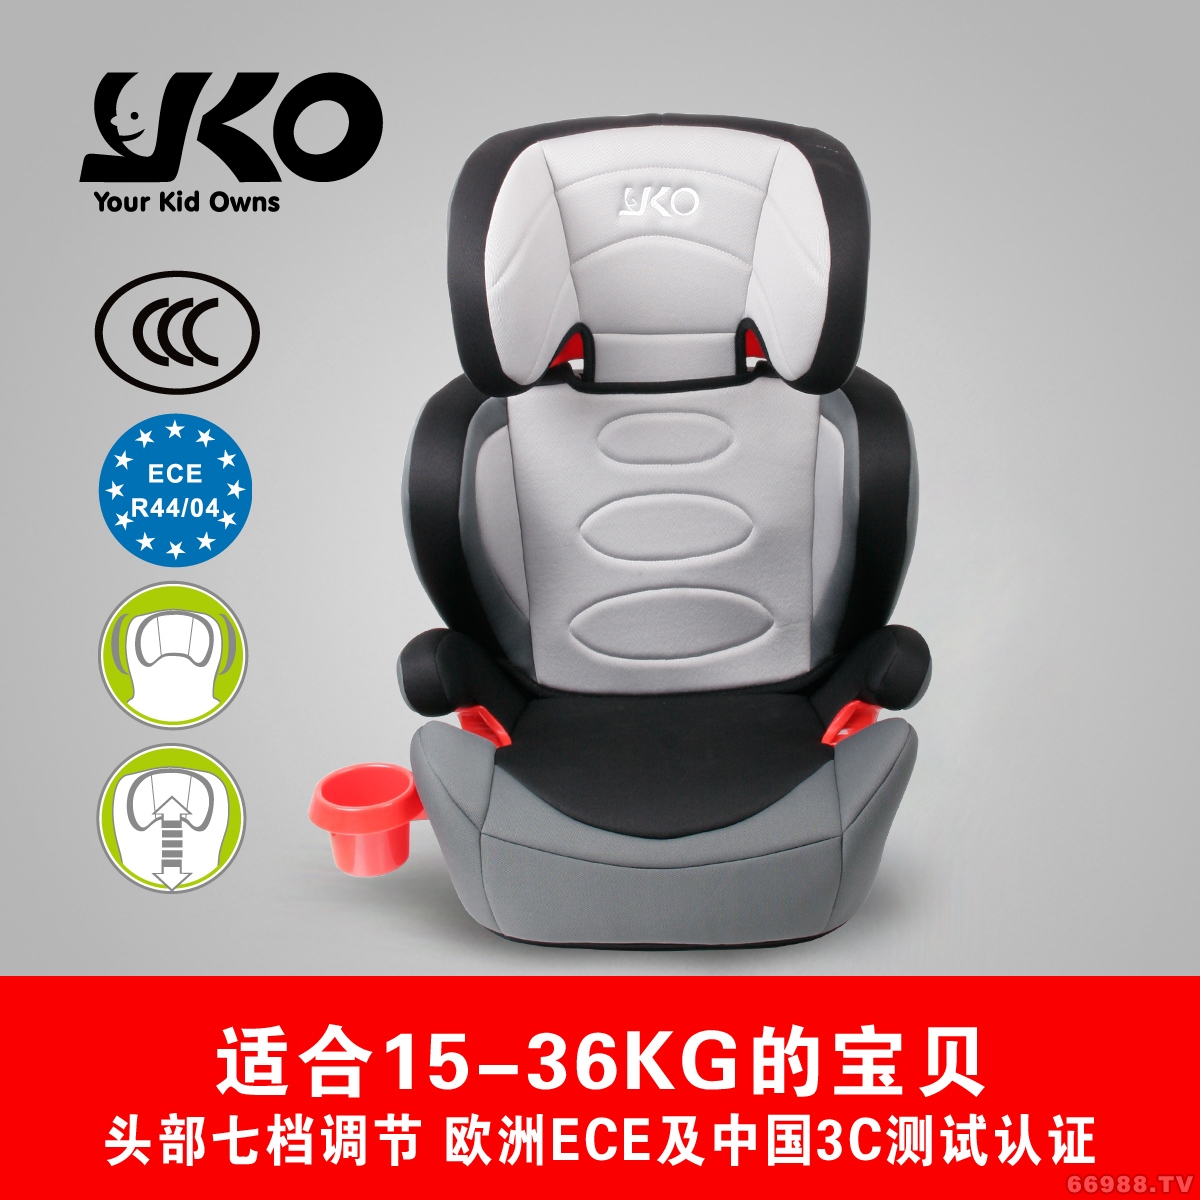 藝高YKO汽車兒童安全座椅 960